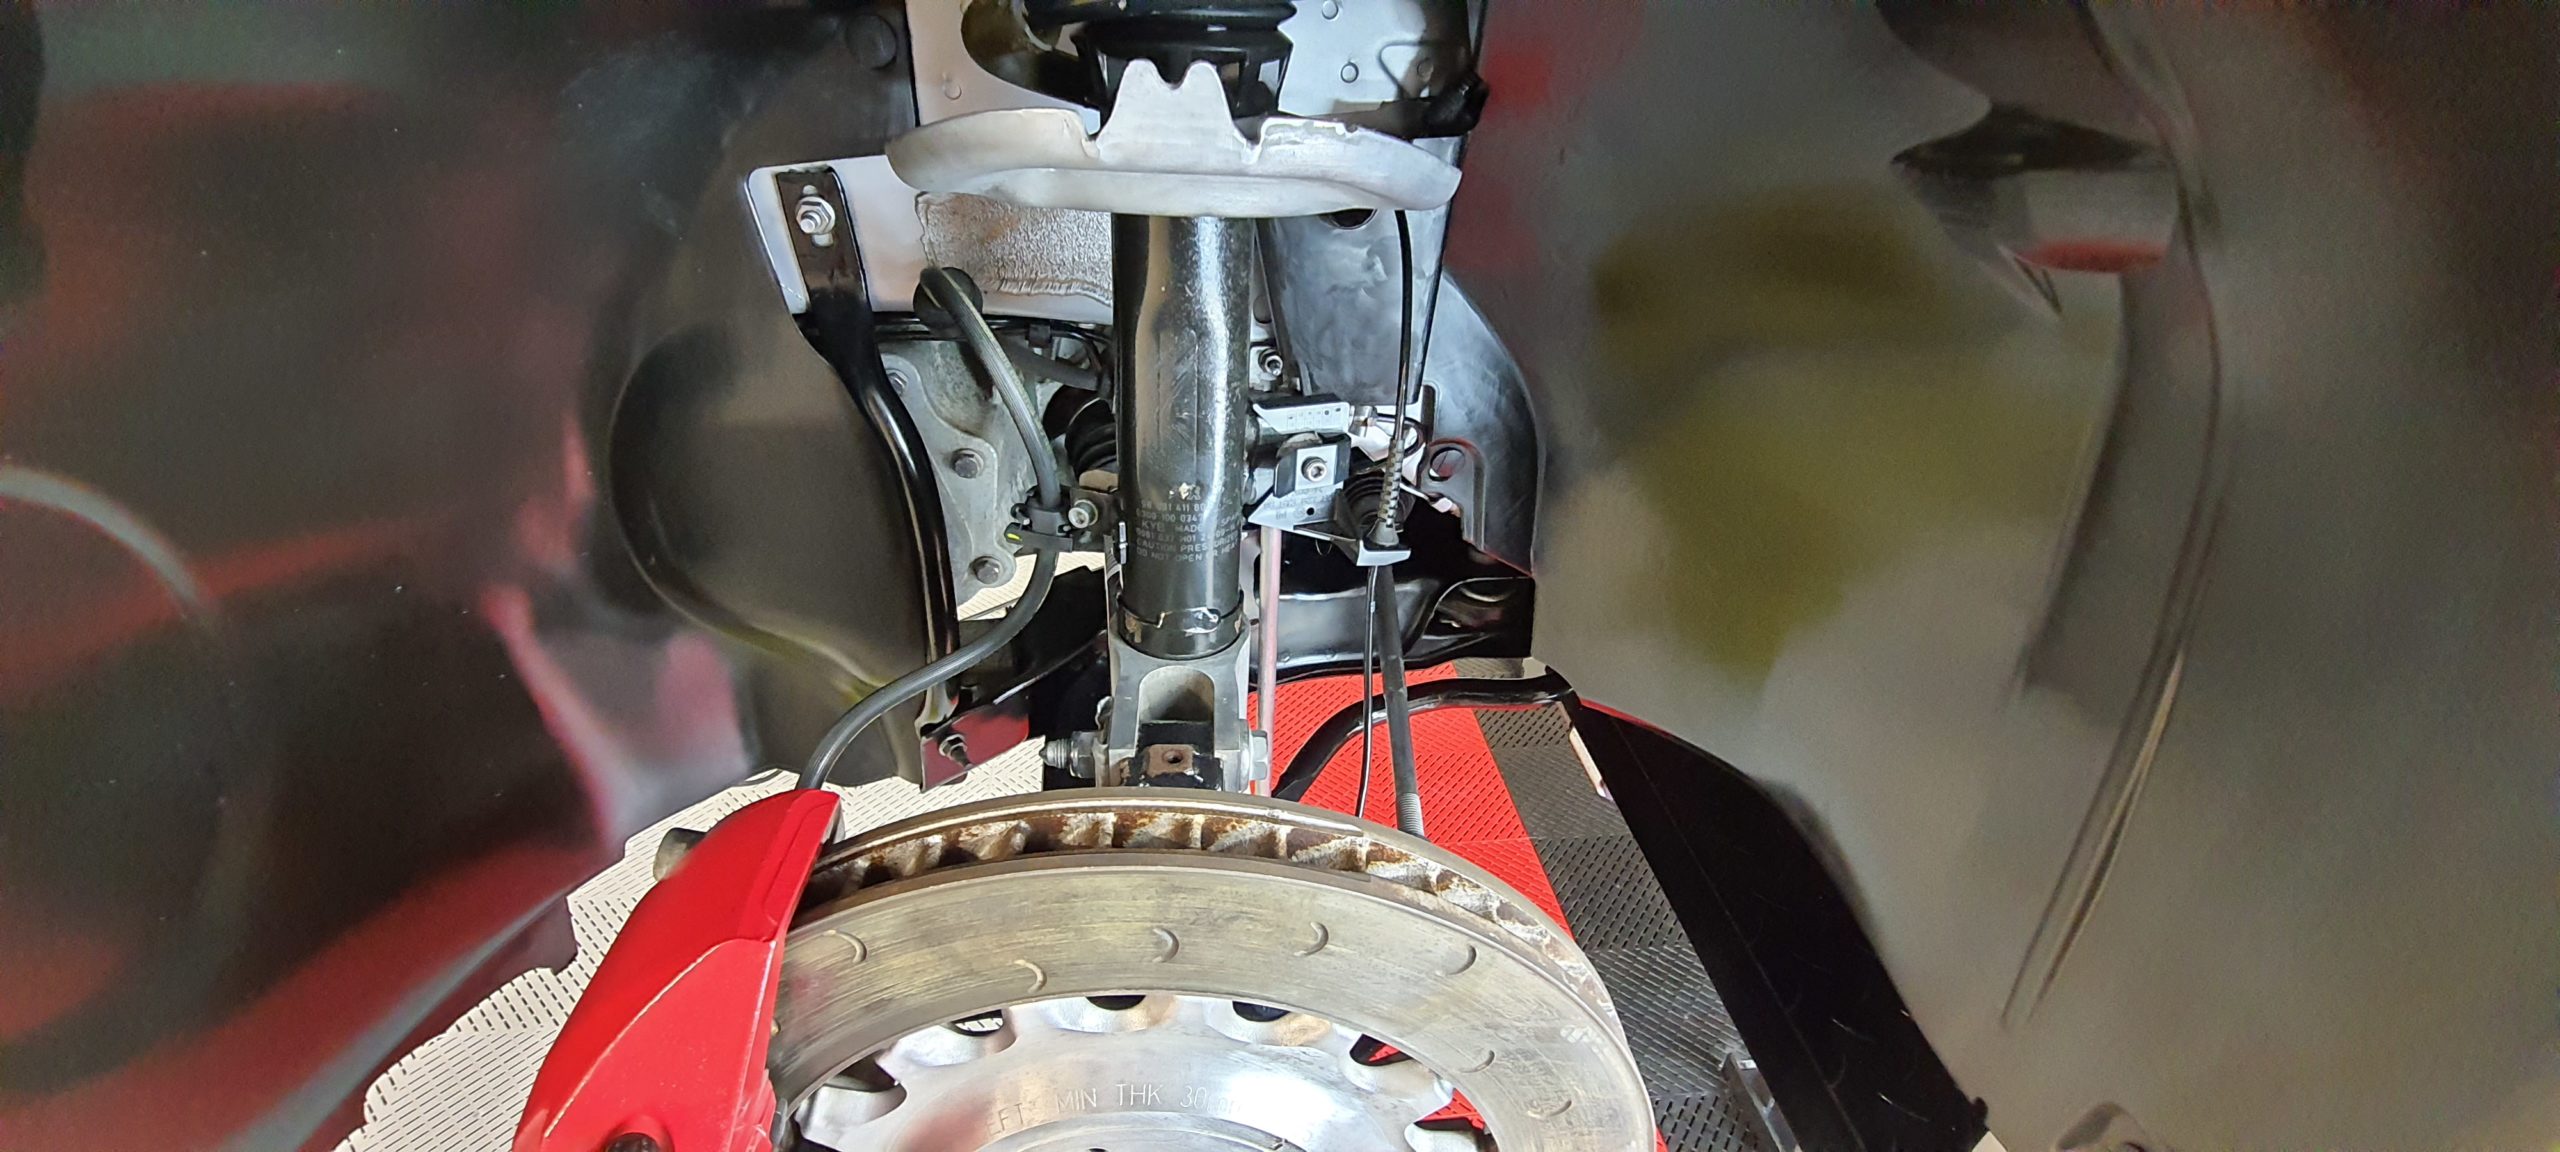 Application du traitement plastique Ceramic-guard Cartec dans les passage de roues sur Peugeot RCZ-R